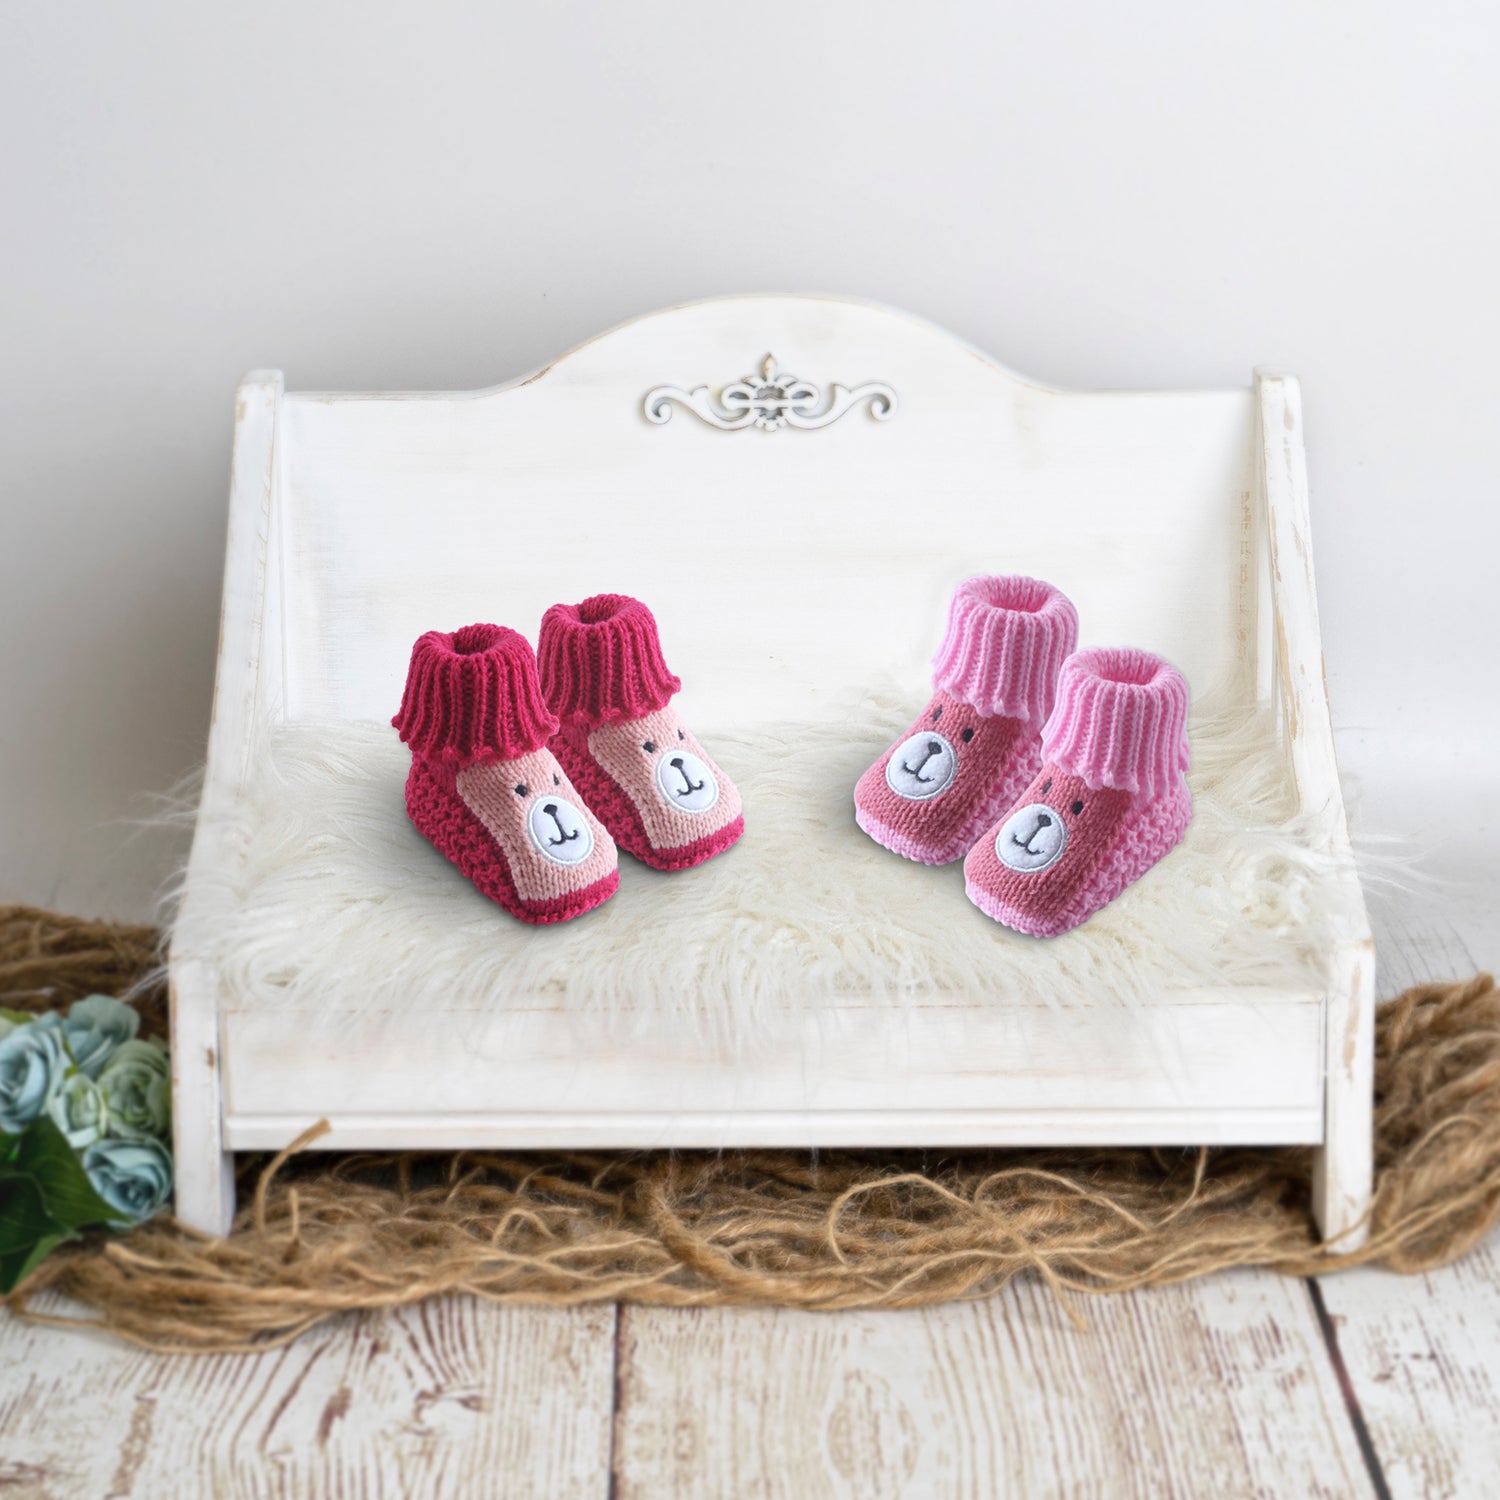 Newborn Crochet Woollen Booties Teddy - Red, Pink